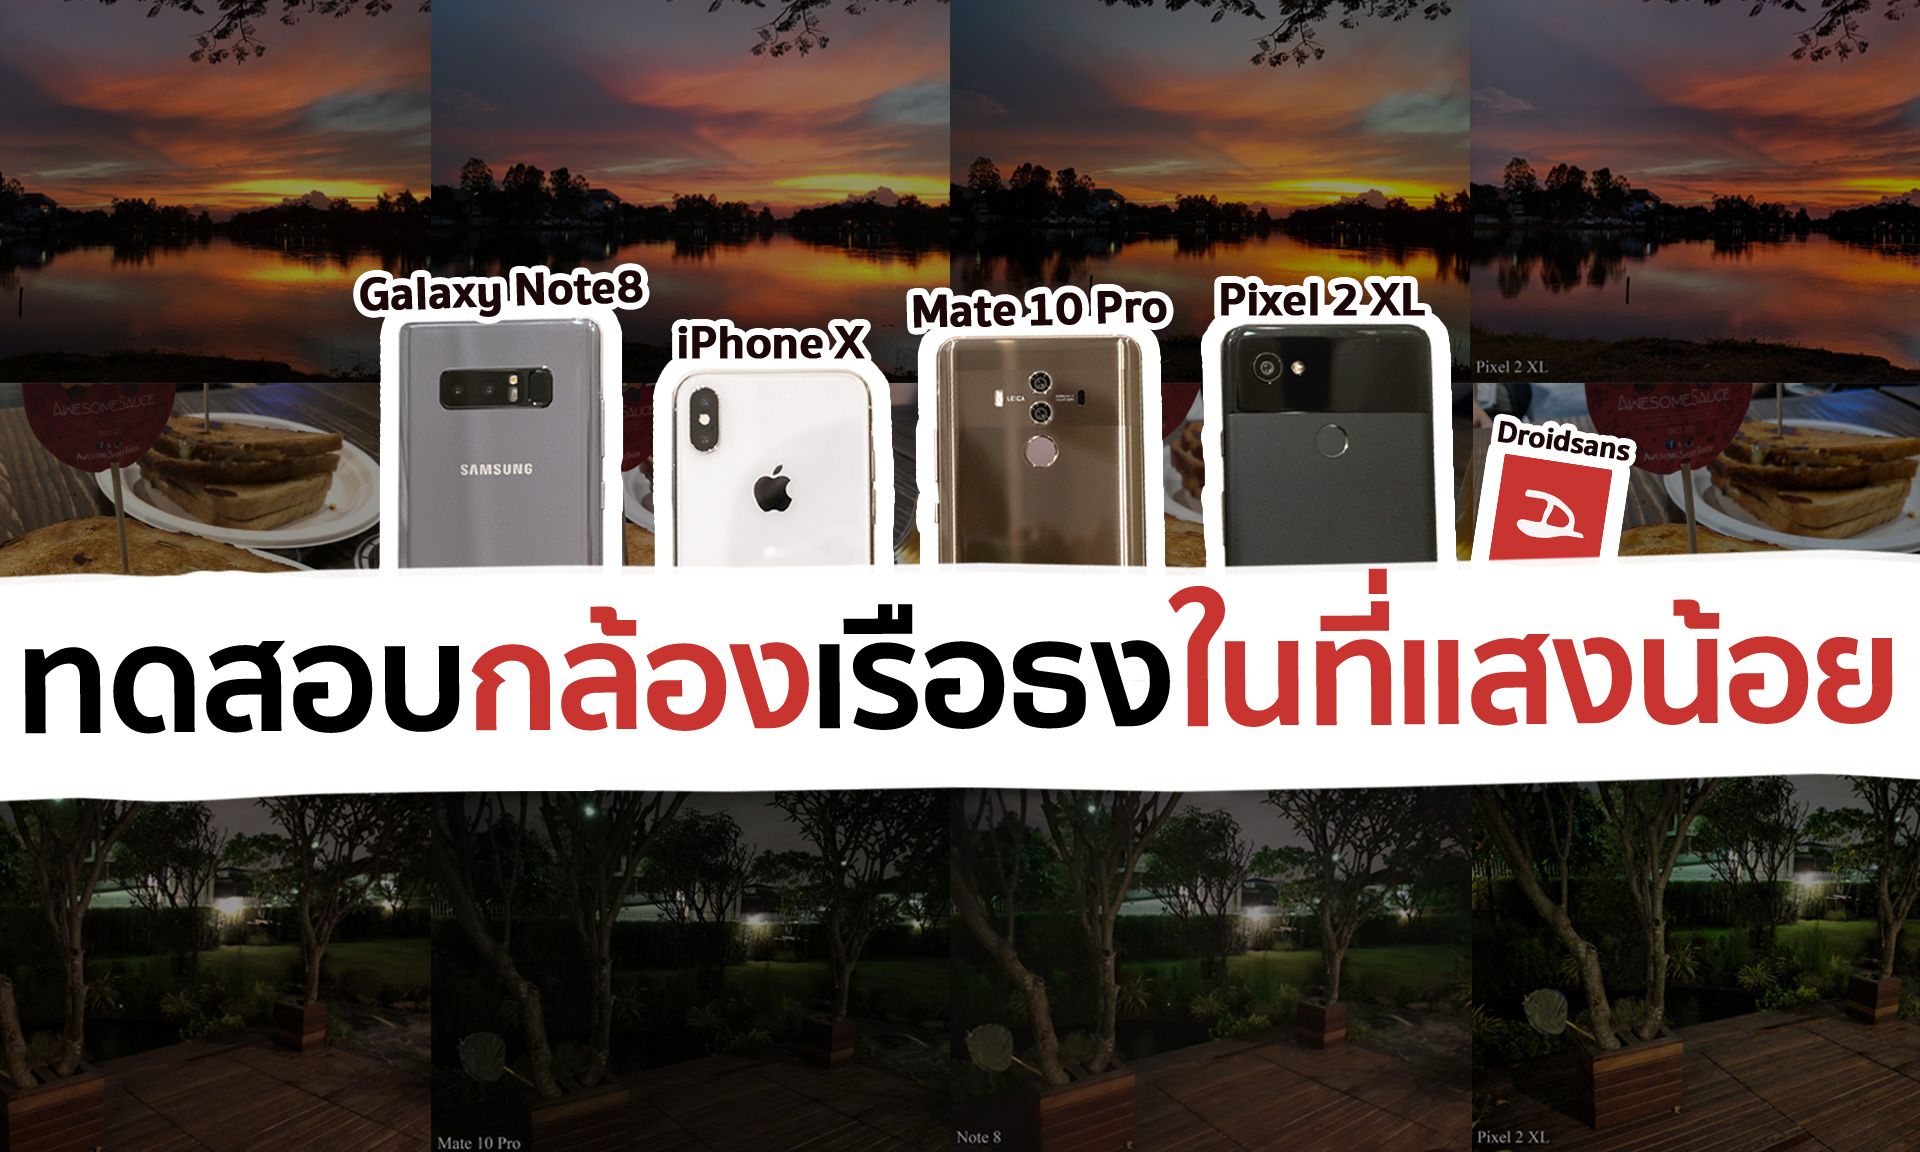 ทดสอบกล้องในที่แสงน้อย iPhone X vs Samsung Galaxy Note 8 vs Google Pixel 2 XL vs Huawei Mate 10 Pro